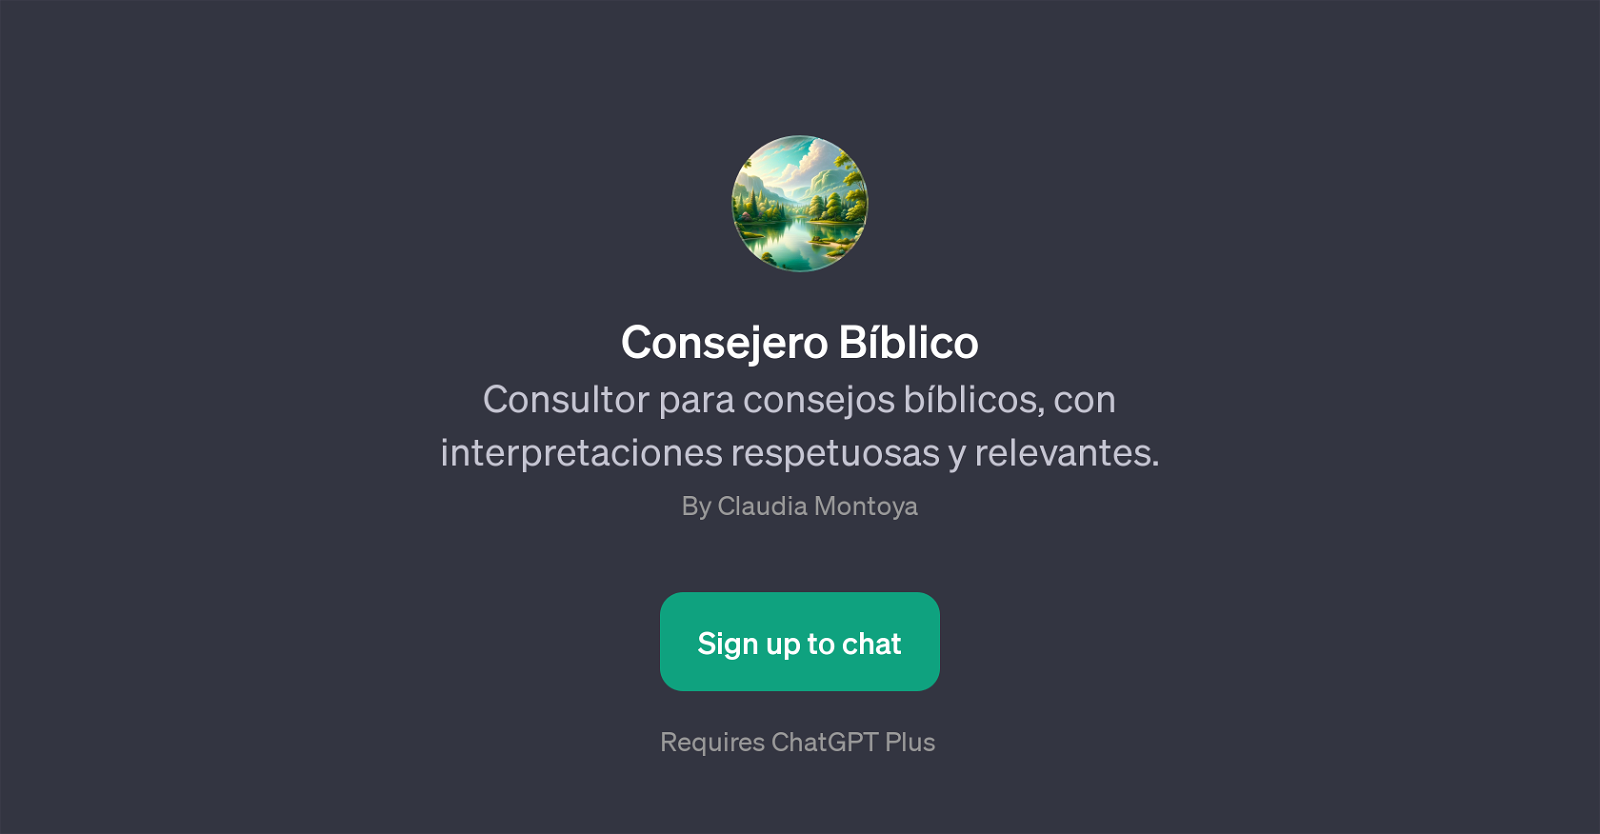 Consejero Bblico website